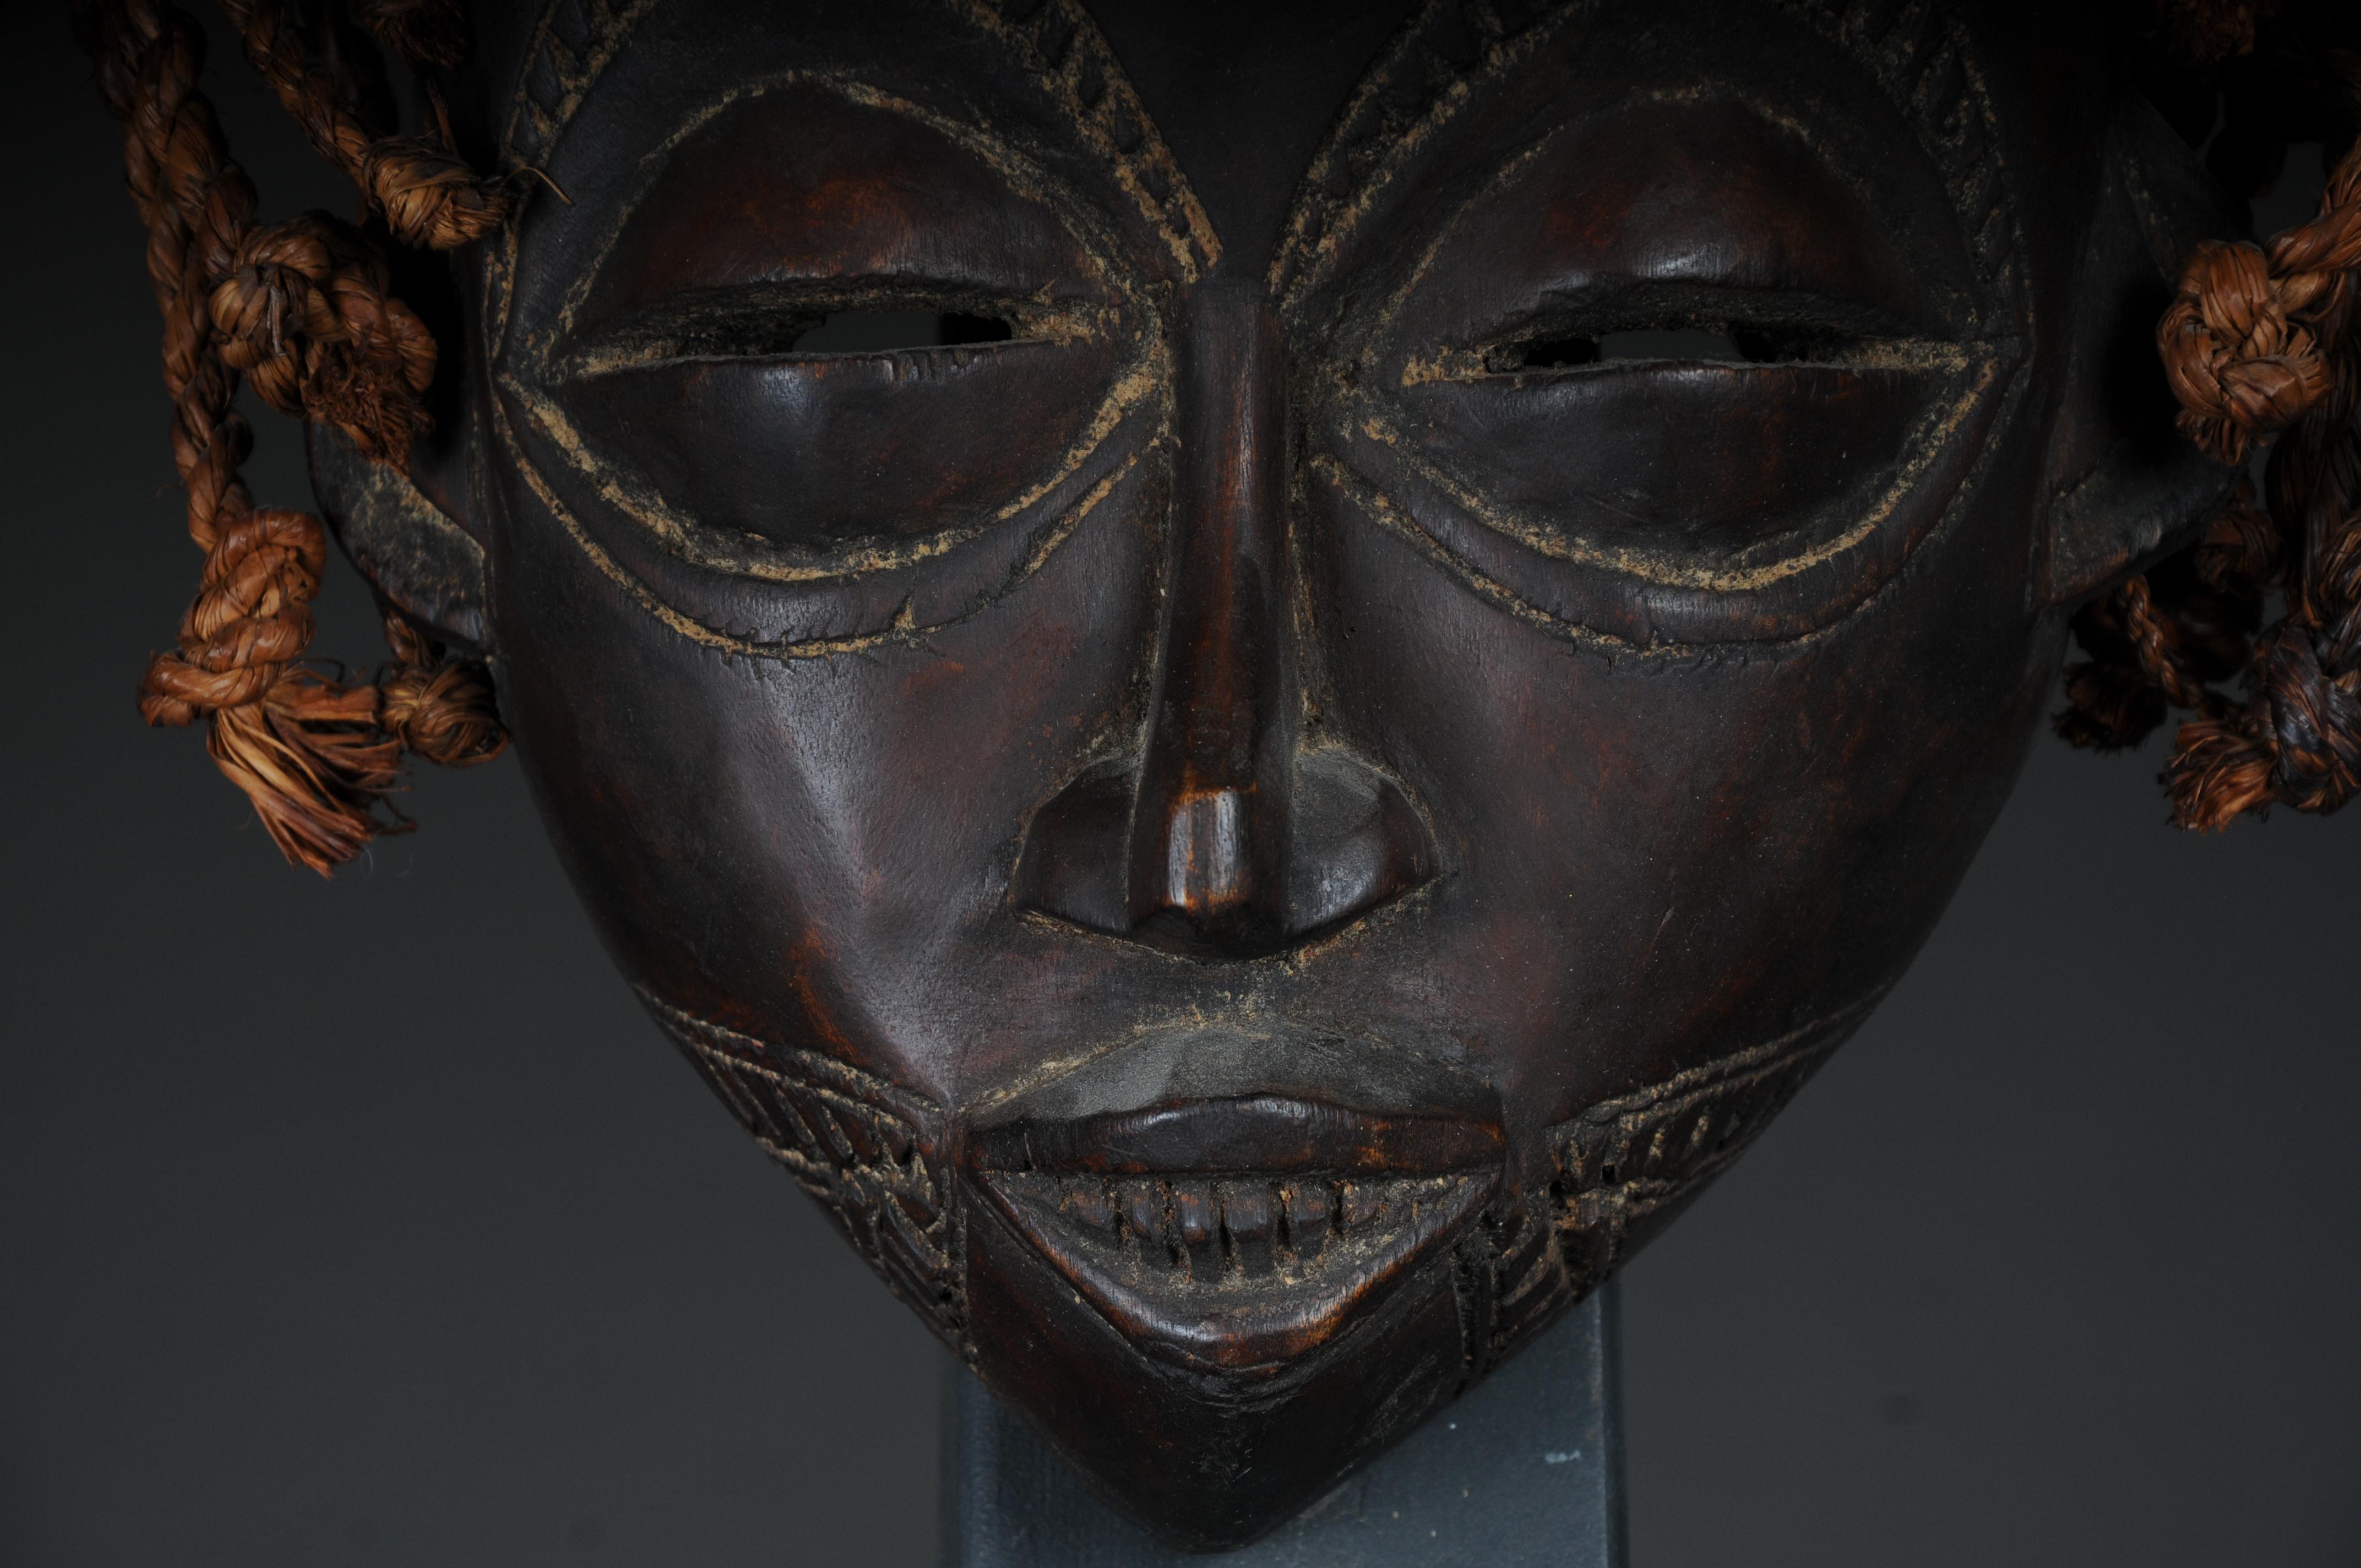 Masque ancien en bois sculpté du 20e siècle, art africain

Bois massif, sculpté à la main, Afrique probablement siècle

Très décoratif. Provient d'une collection privée berlinoise.